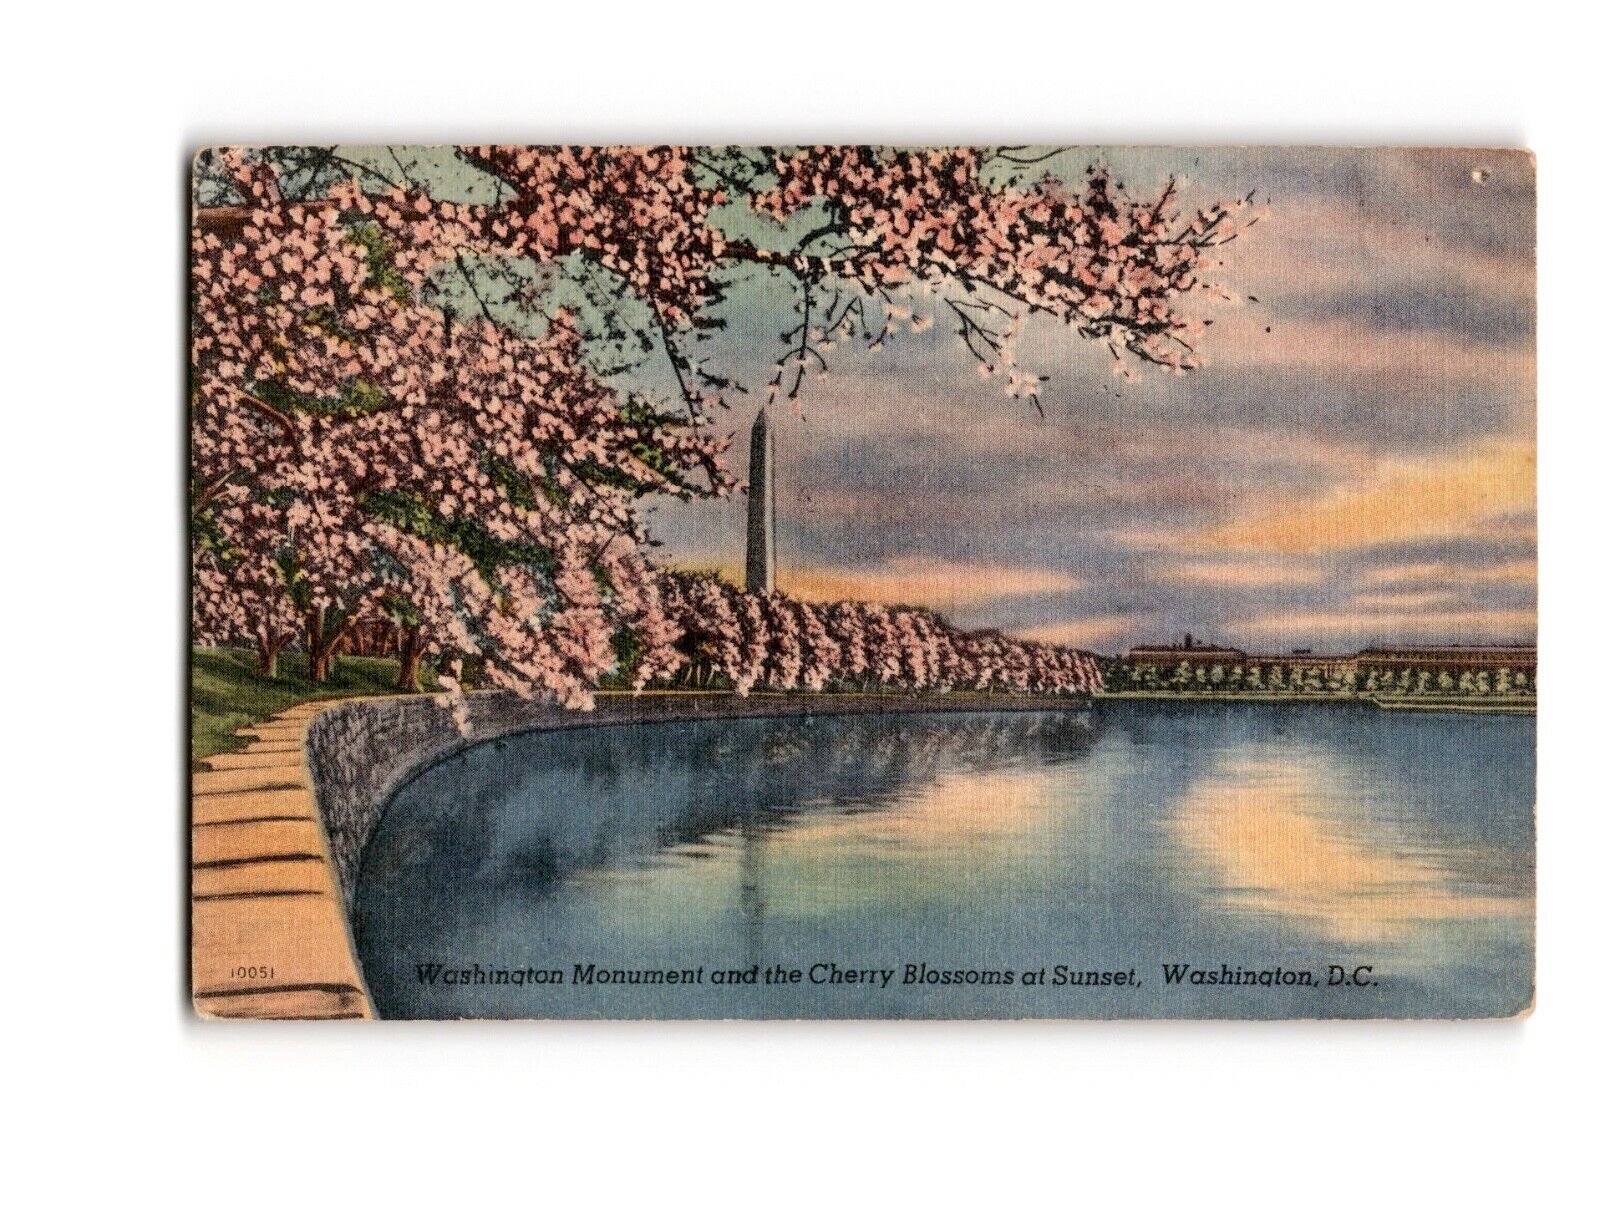 Vintage Postcard Washington Monument Cherry Blossoms Sunset DC 10051